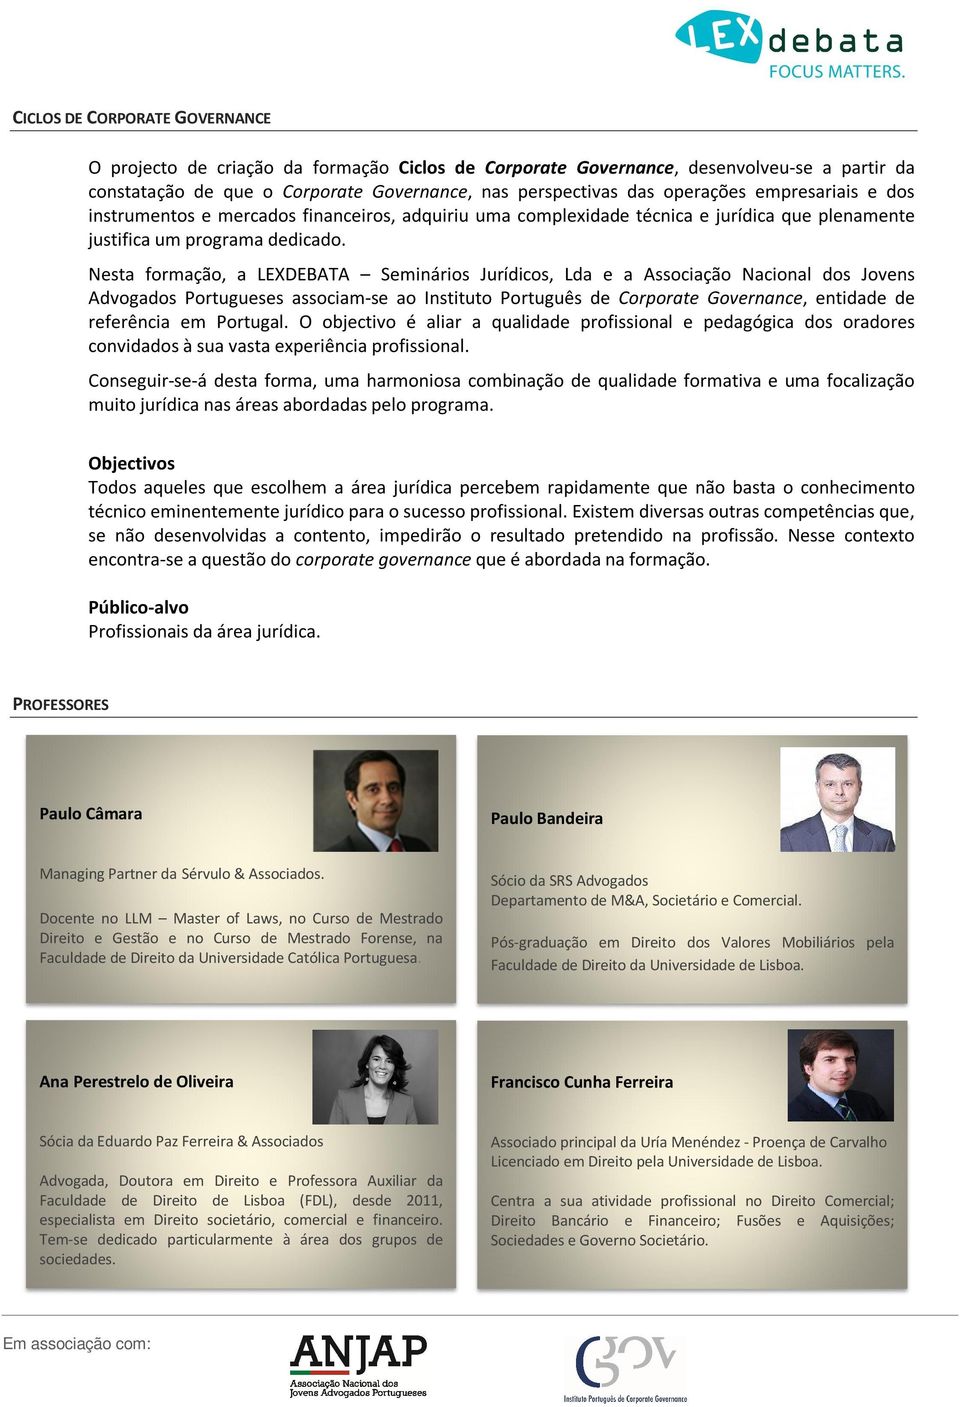 Nesta formação, a LEXDEBATA Seminários Jurídicos, Lda e a Associação Nacional dos Jovens Advogados Portugueses associam-se ao Instituto Português de Corporate Governance, entidade de referência em